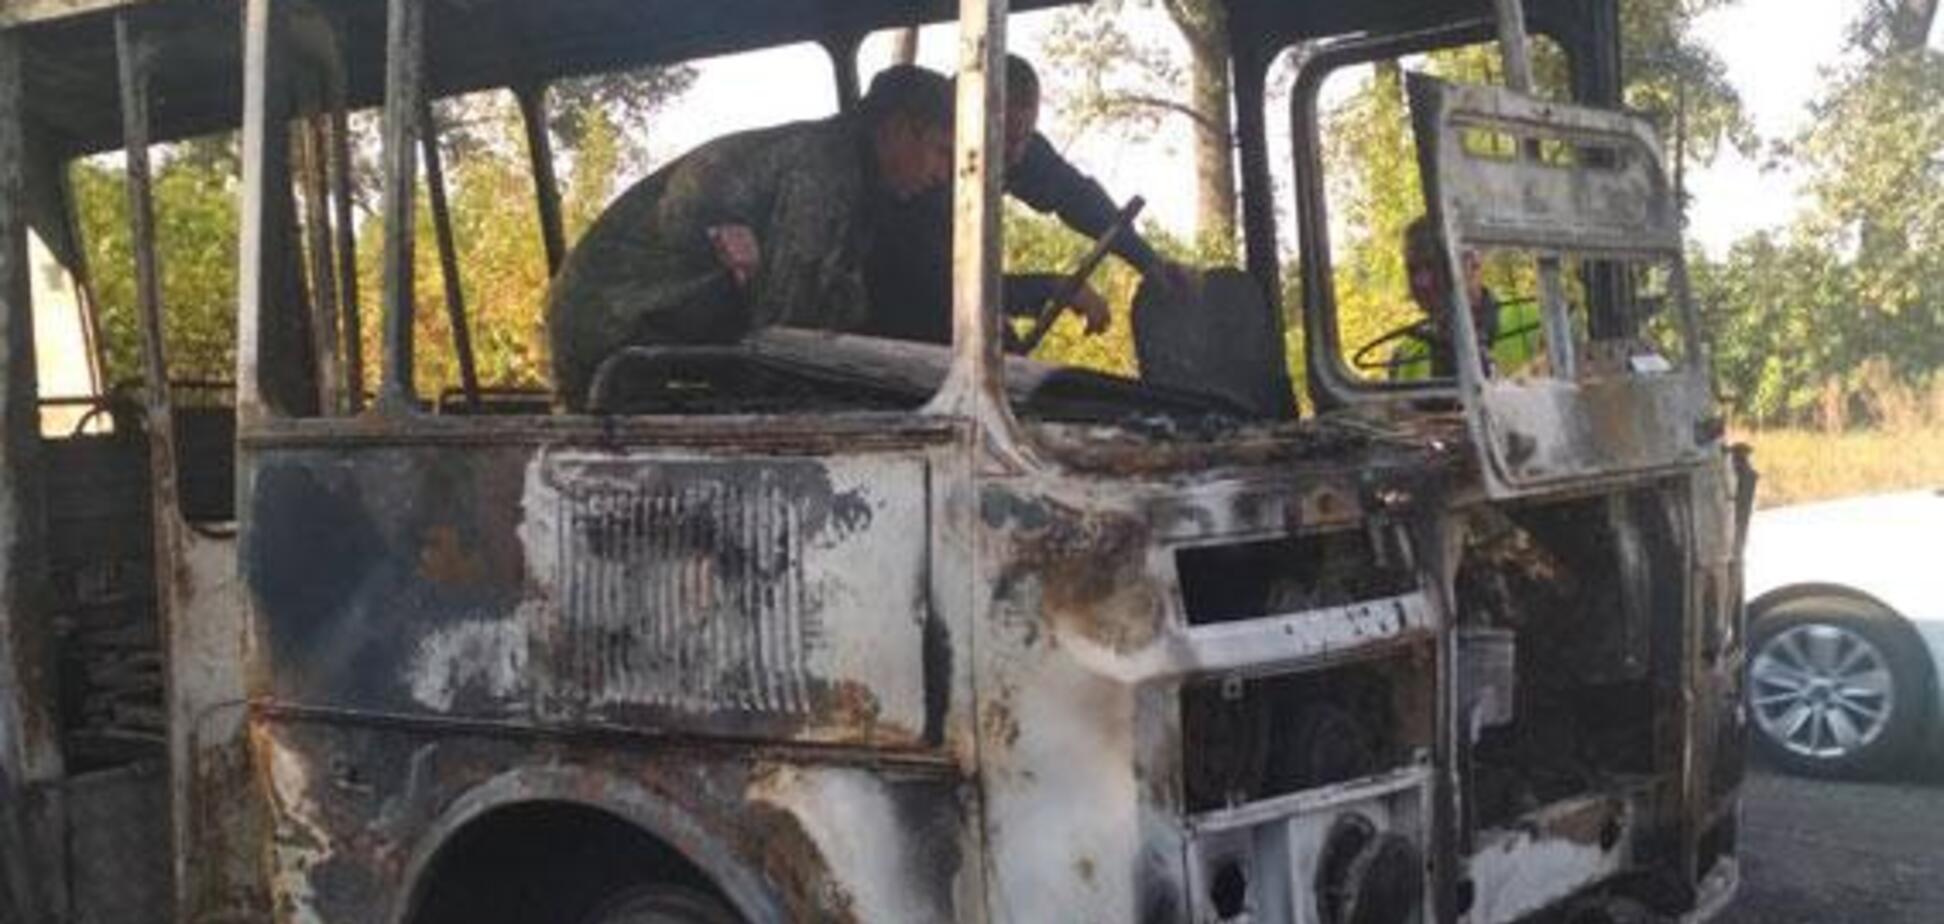 Перевозив 20 дітей: на Сумщині повністю згорів пасажирський автобус. Фото НП